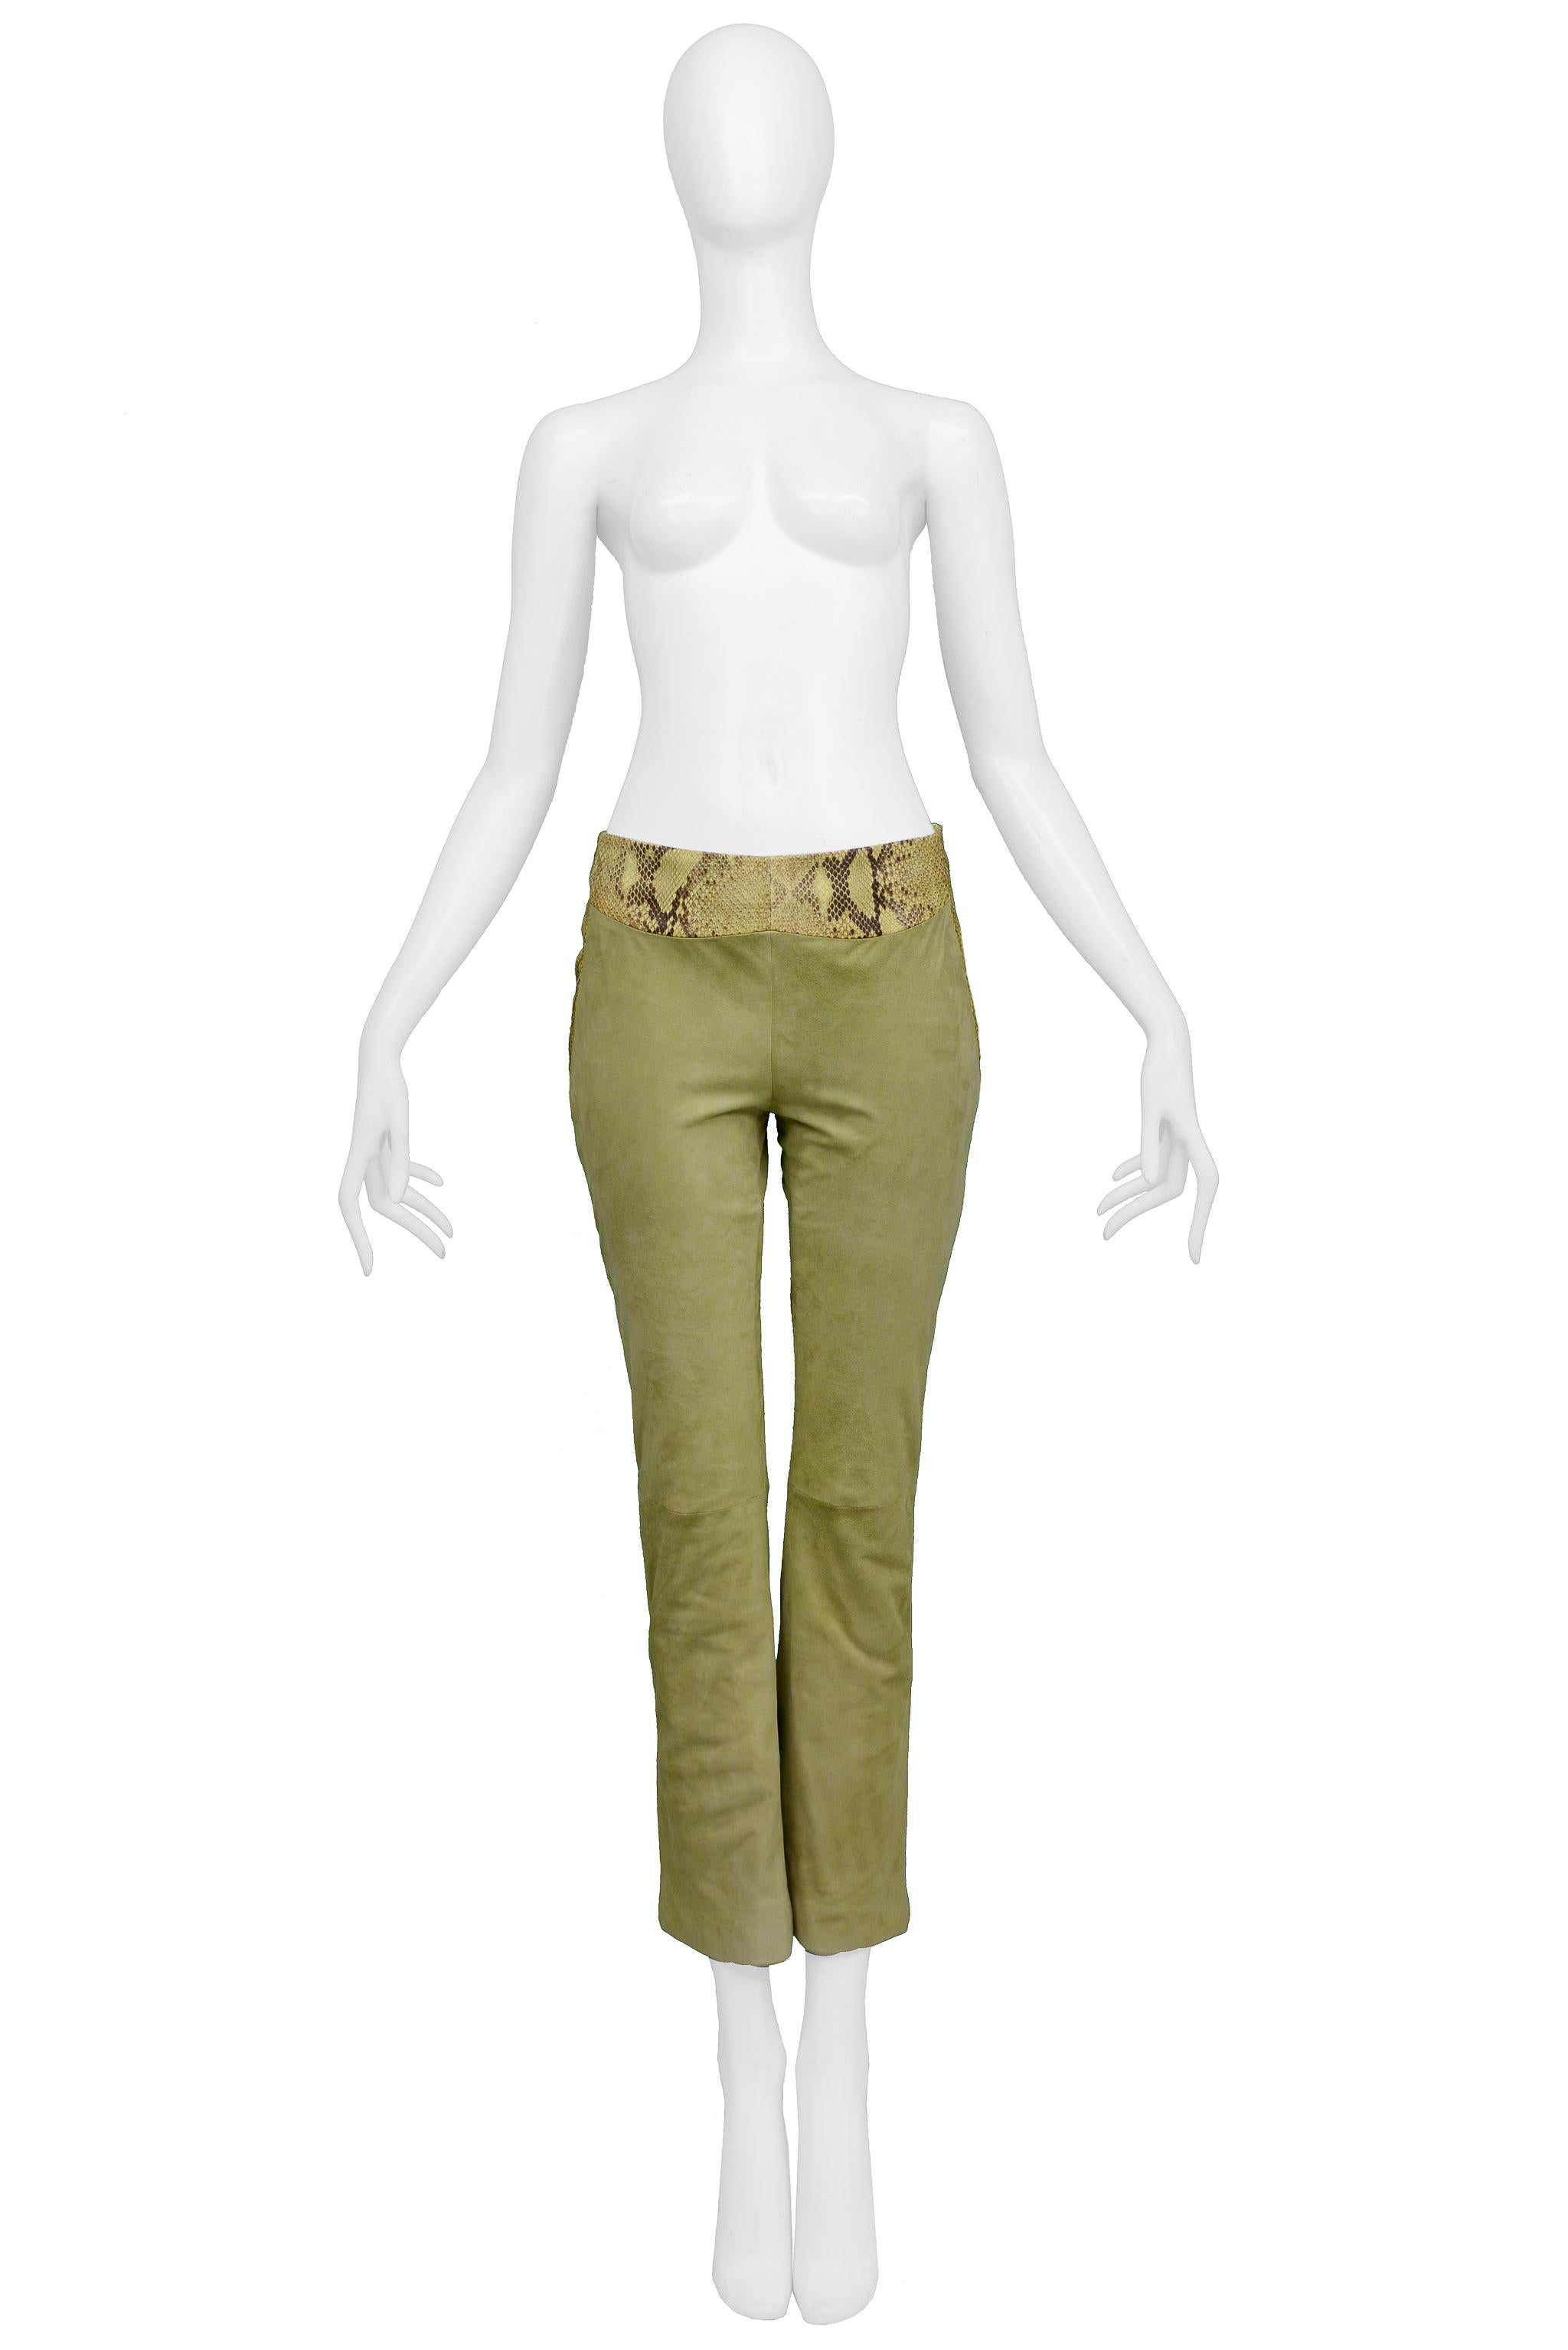 Resurrection Vintage est heureux d'offrir une paire de pantalons vintage Versace en daim vert clair avec une taille haute, une coupe ajustée, des jambes fines, une ceinture en cuir contrastée, une doublure et une fermeture éclair latérale.